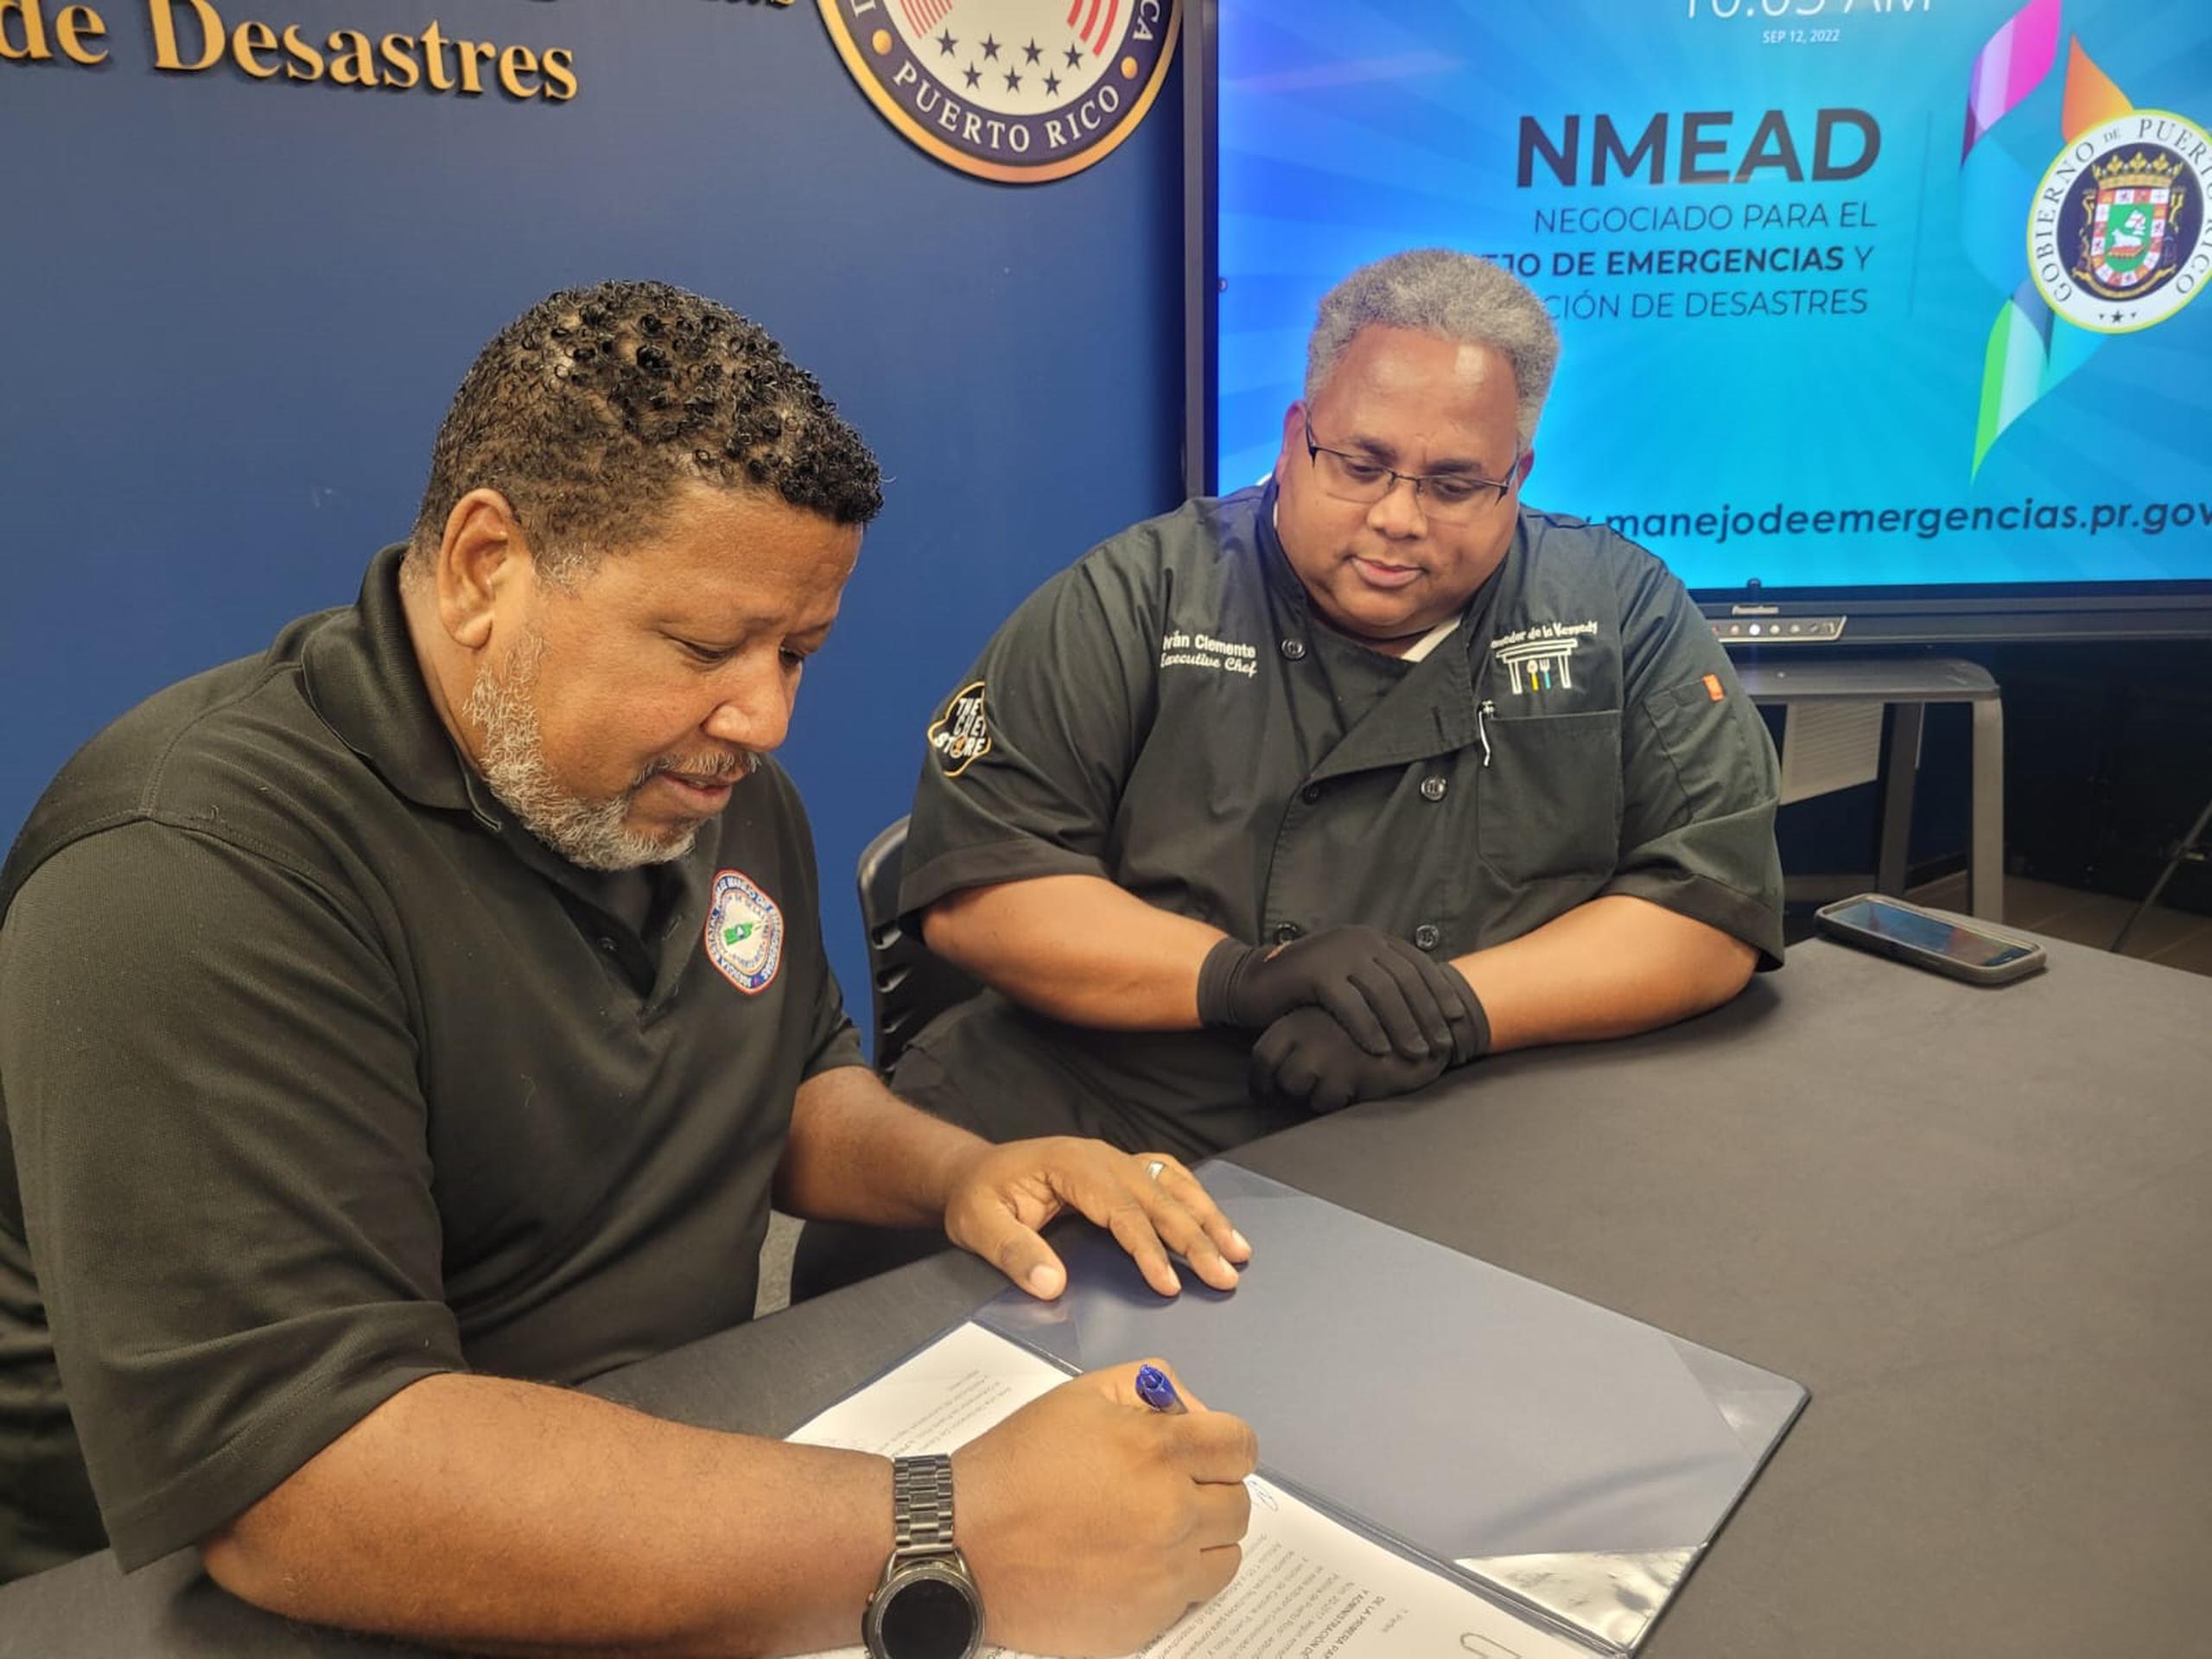 El comisionado del Negociado para el Manejo de Emergencias y Administración de Desastres (NMEAD), Nino Correa Filomeno, y el chef Iván Clemente del Comedor de la Kennedy, durante la firma del acuerdo el lunes, 12 de septiembre de 2022.